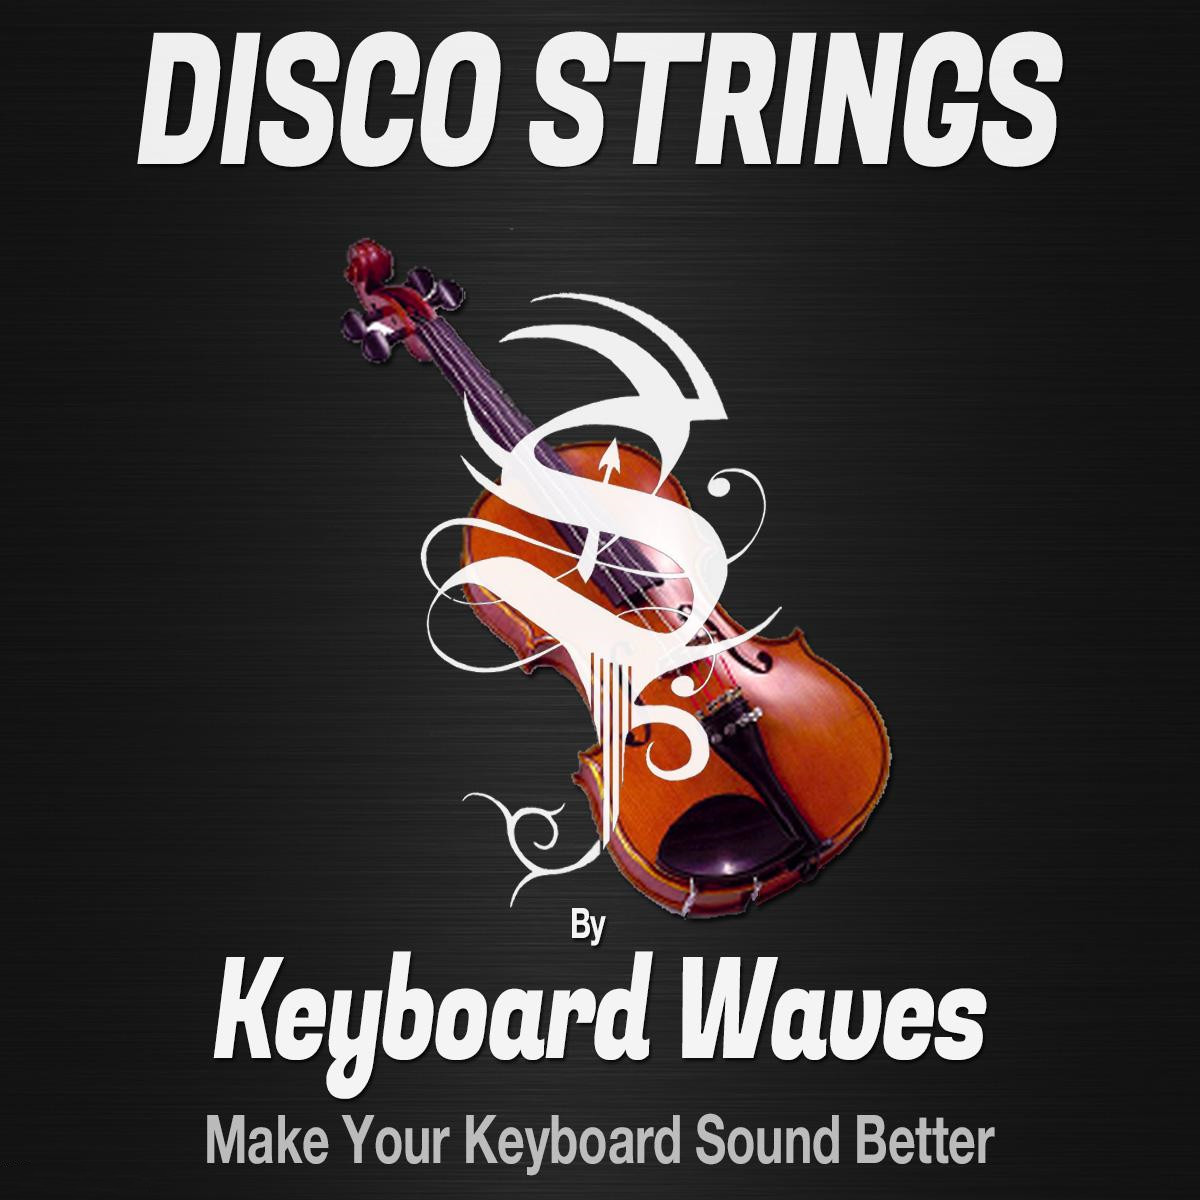 迪斯科弦乐音源 – Keyboard Waves Disco Strings for KONTAKT